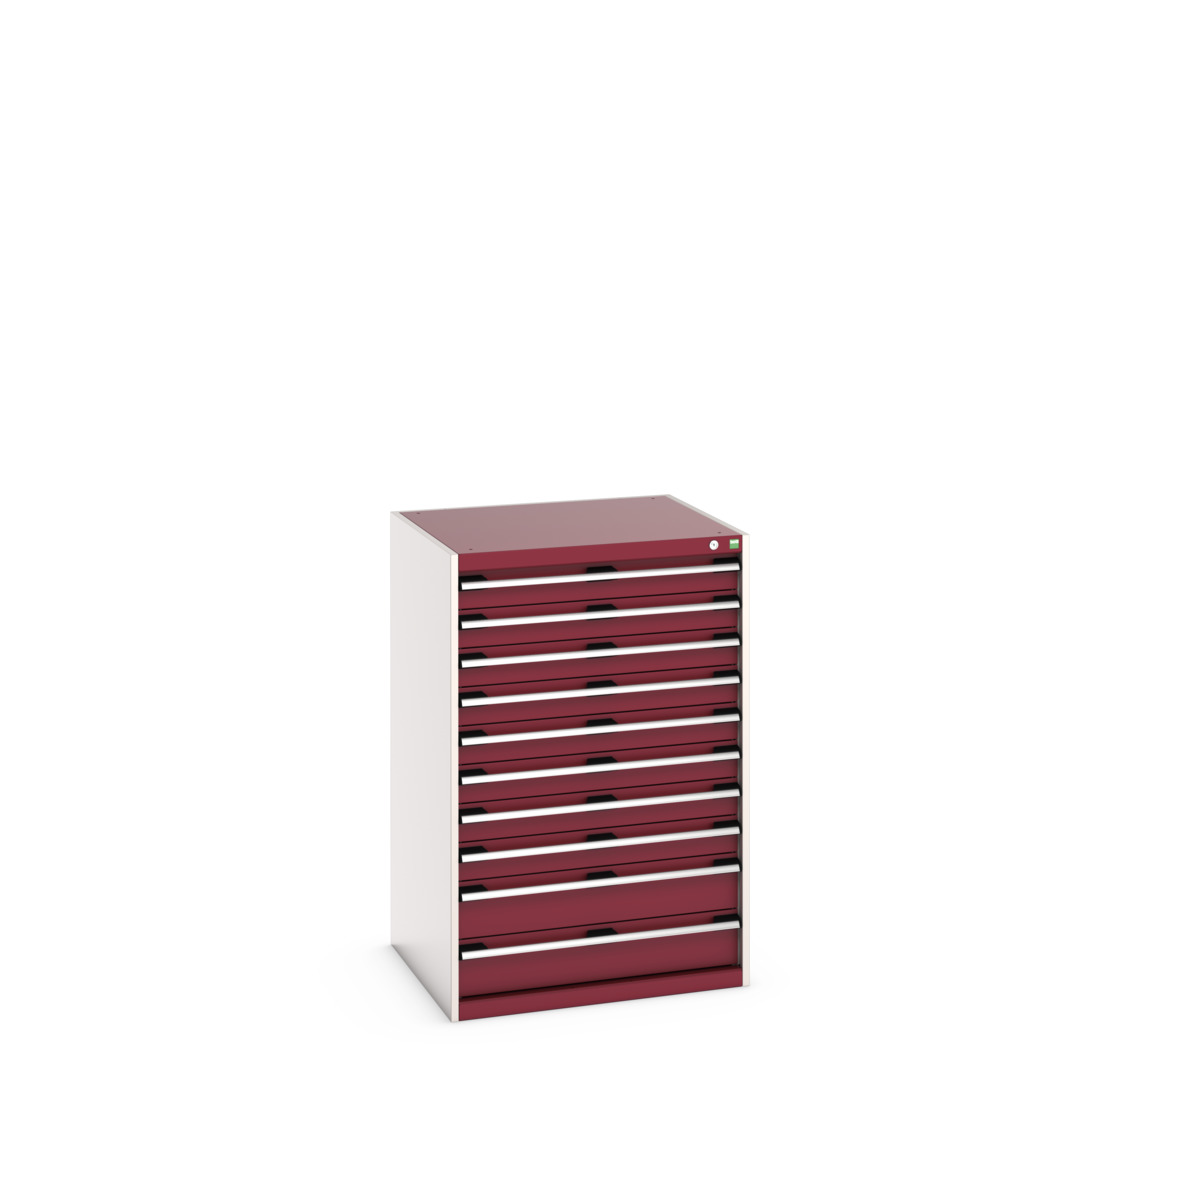 40028037.24V - cubio drawer cabinet